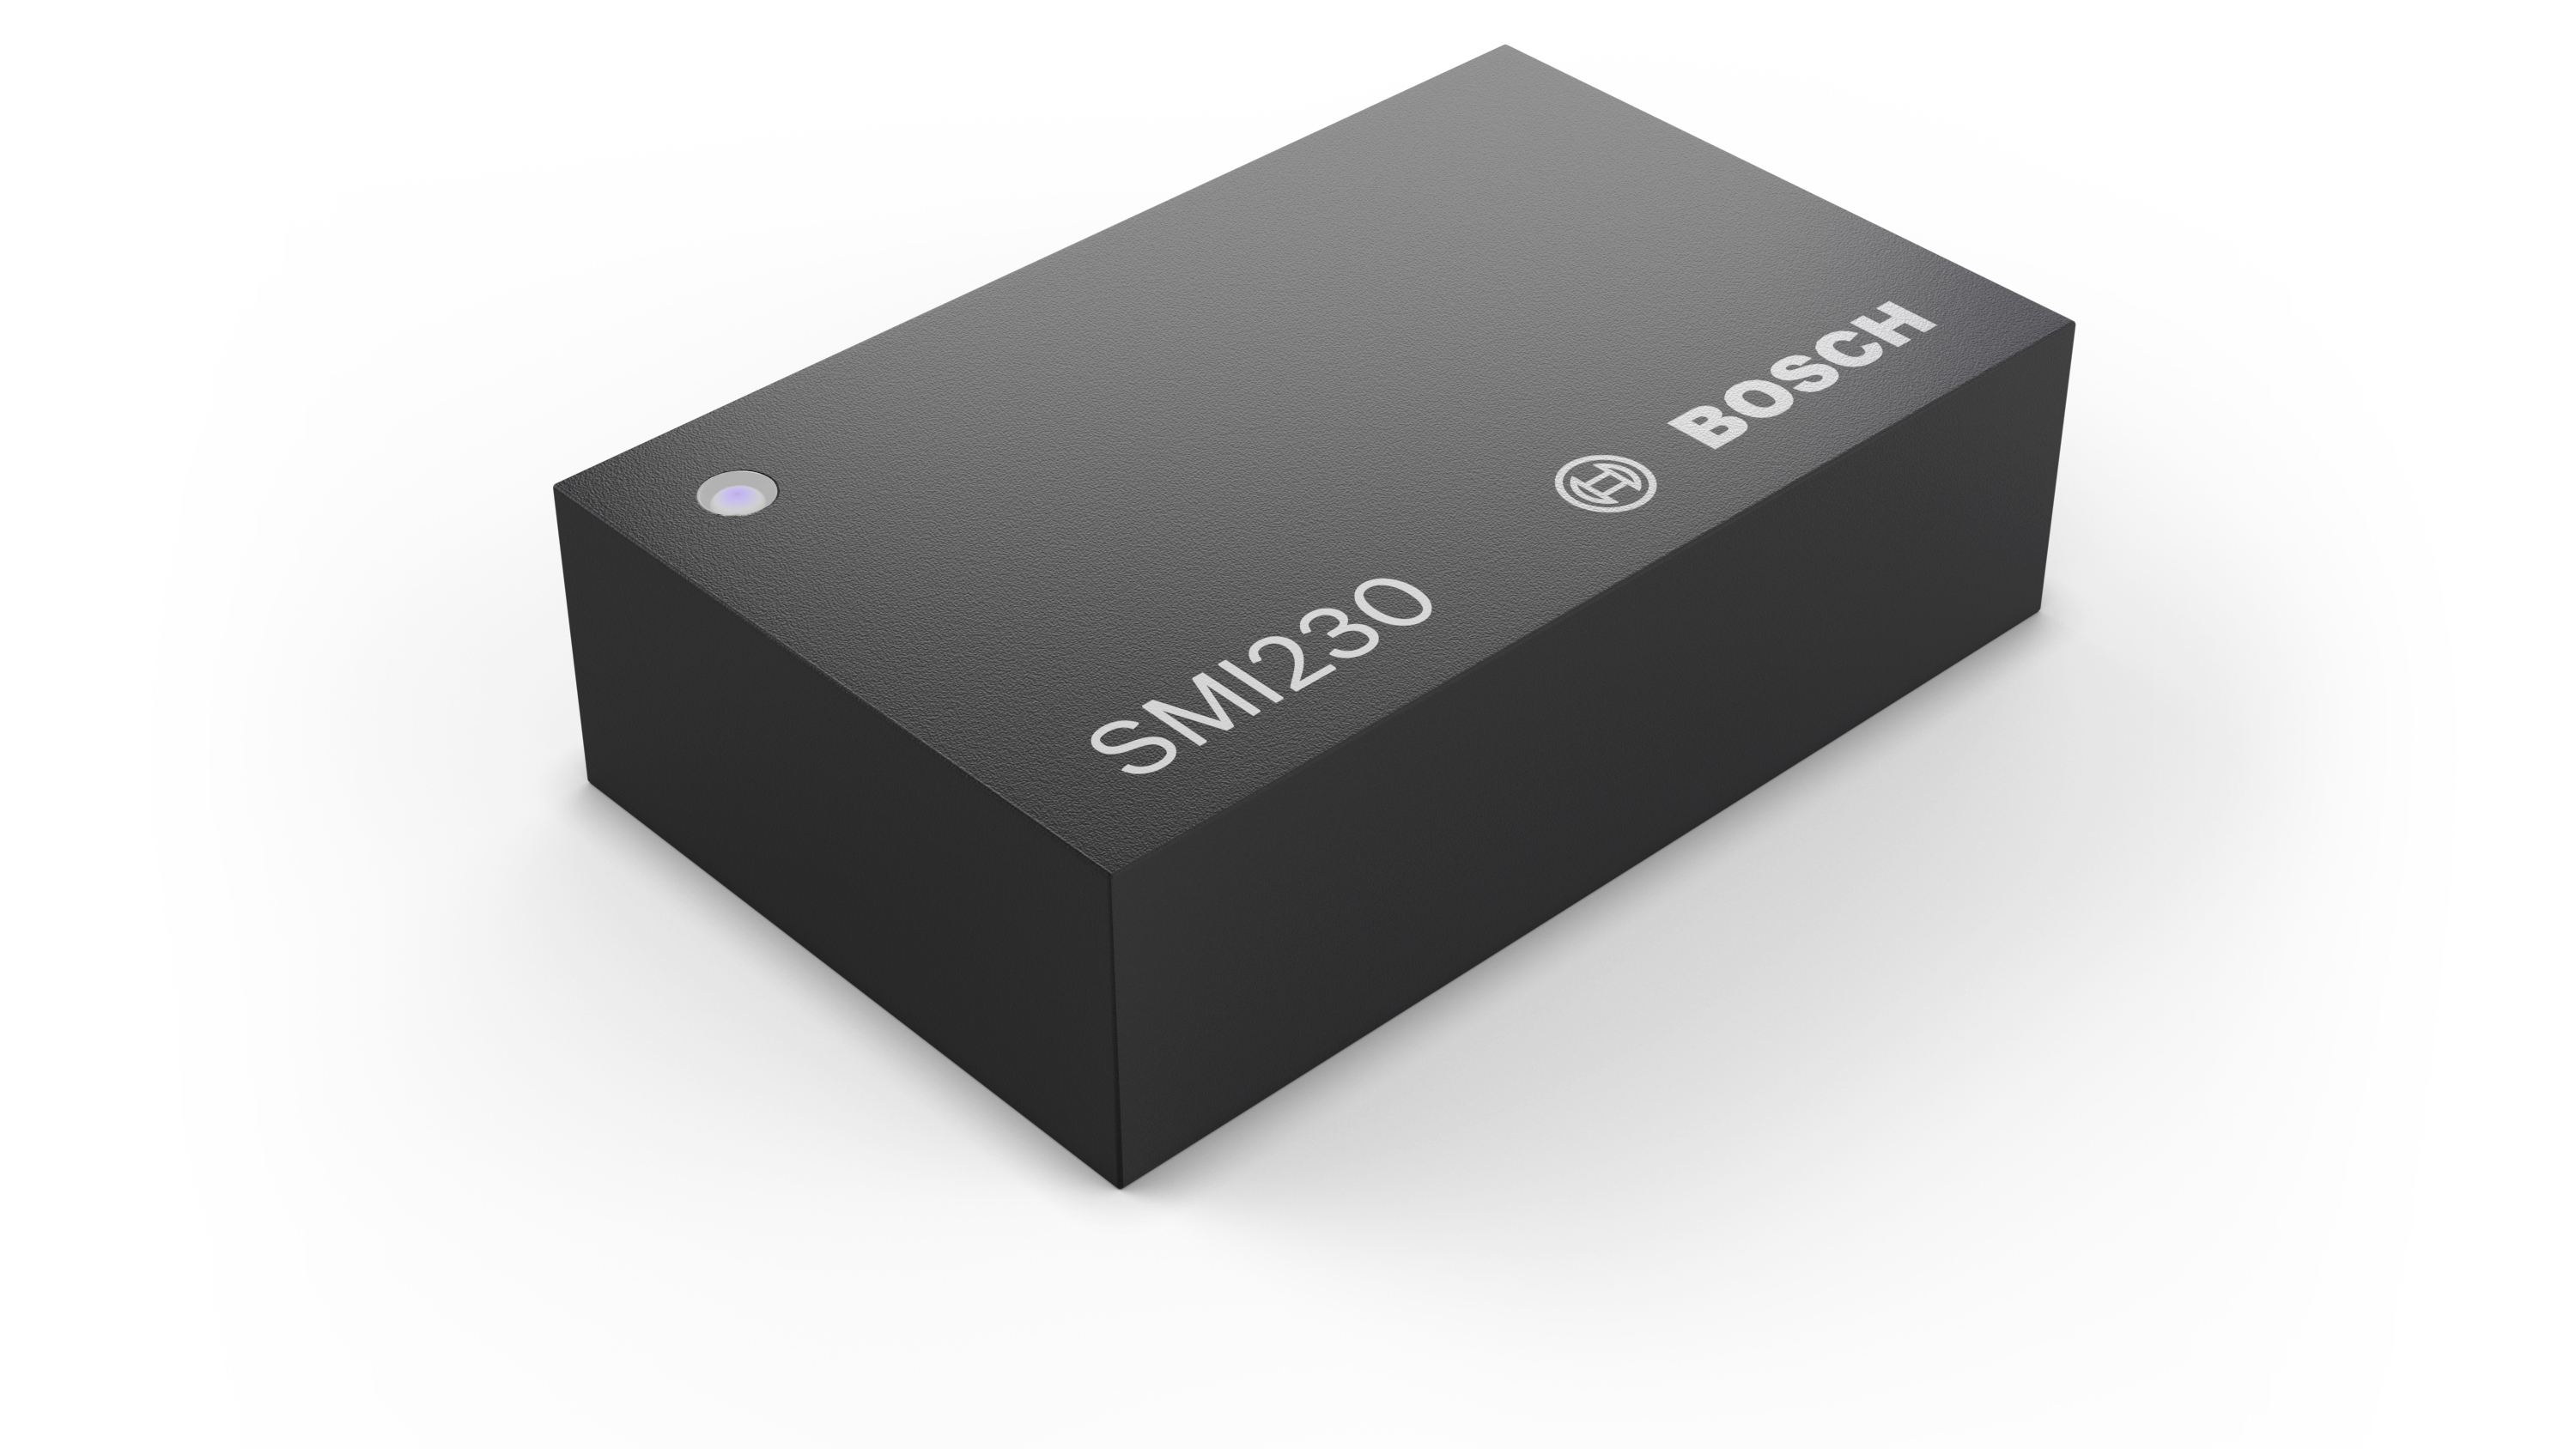 Senzor SMI230 zvyšuje spolehlivost navigačních systémů